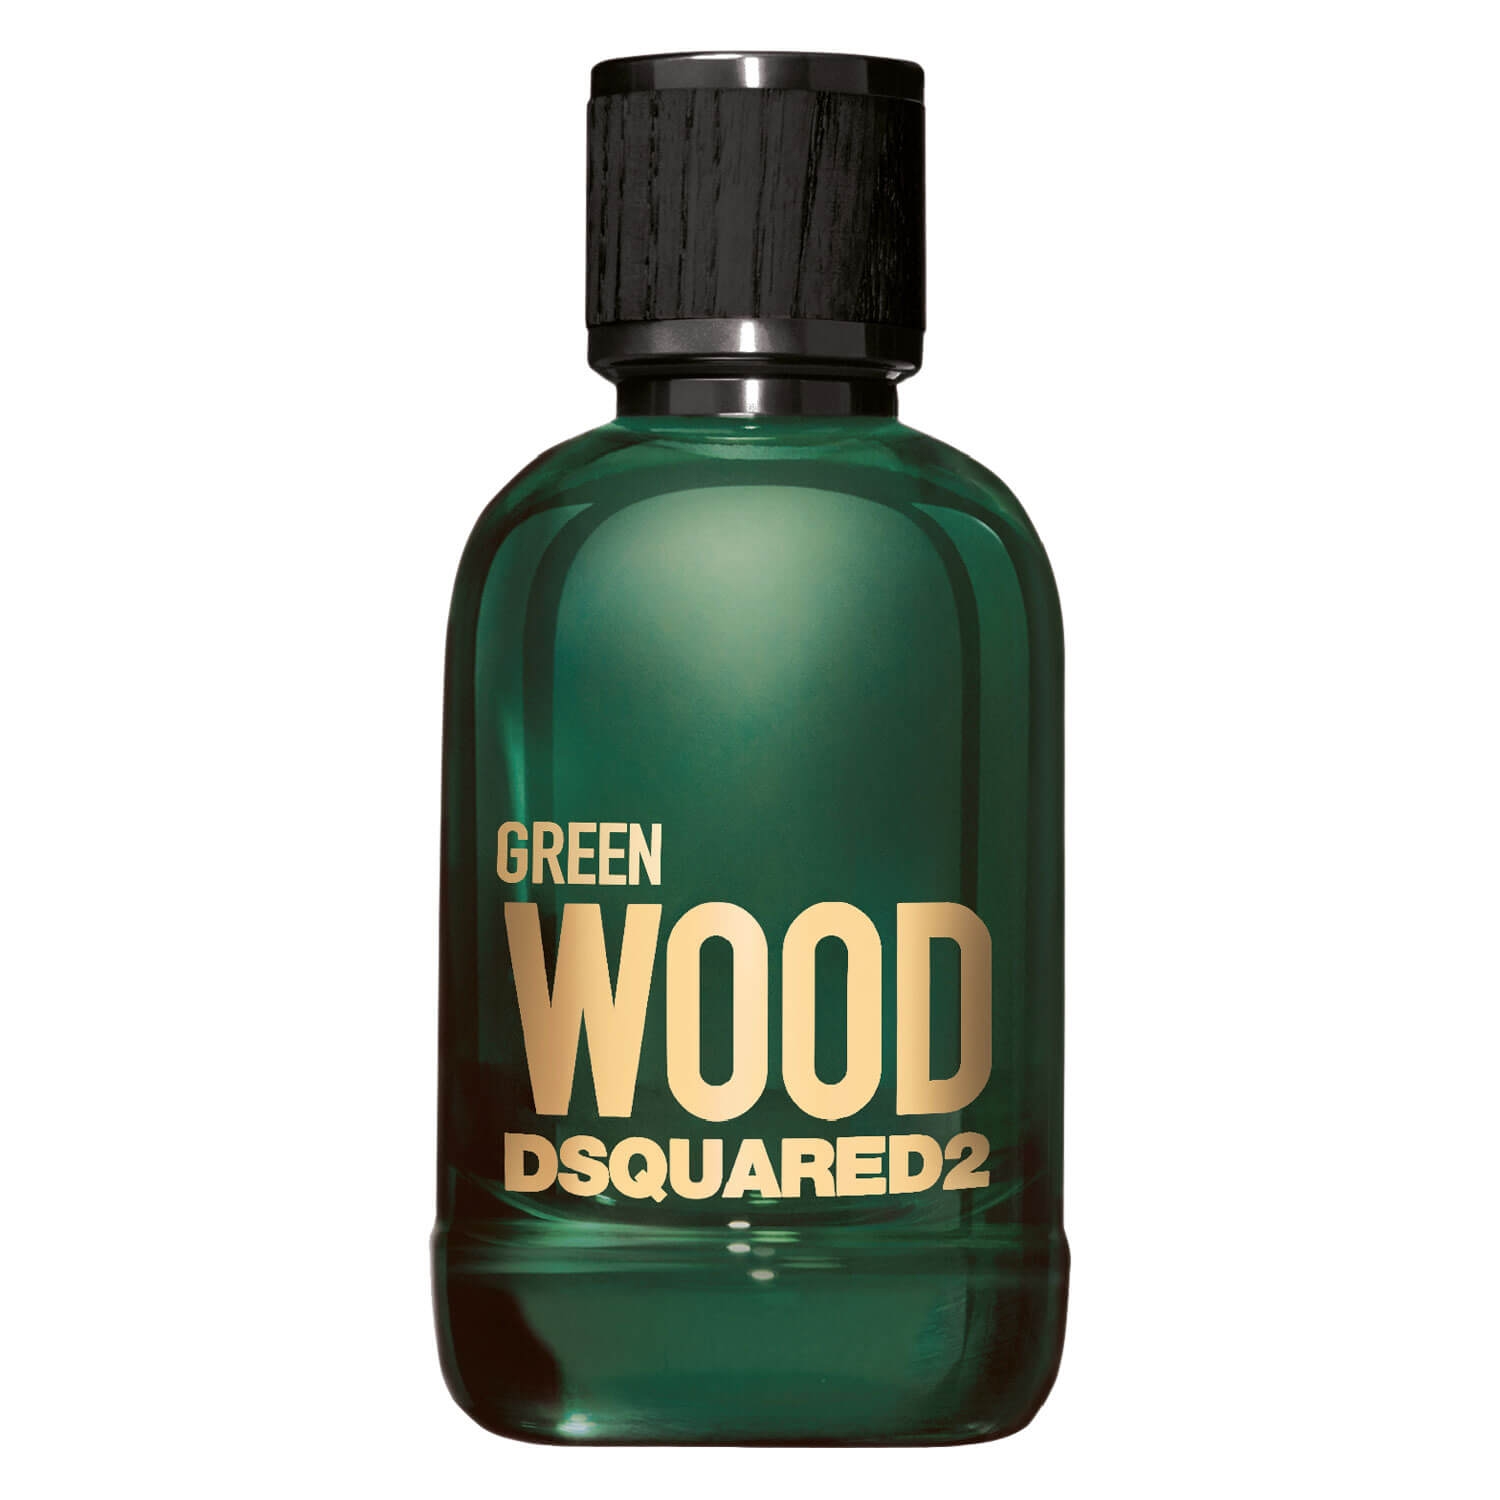 Produktbild von DSQUARED2 WOOD - Green Pour Homme Eau de Toilette